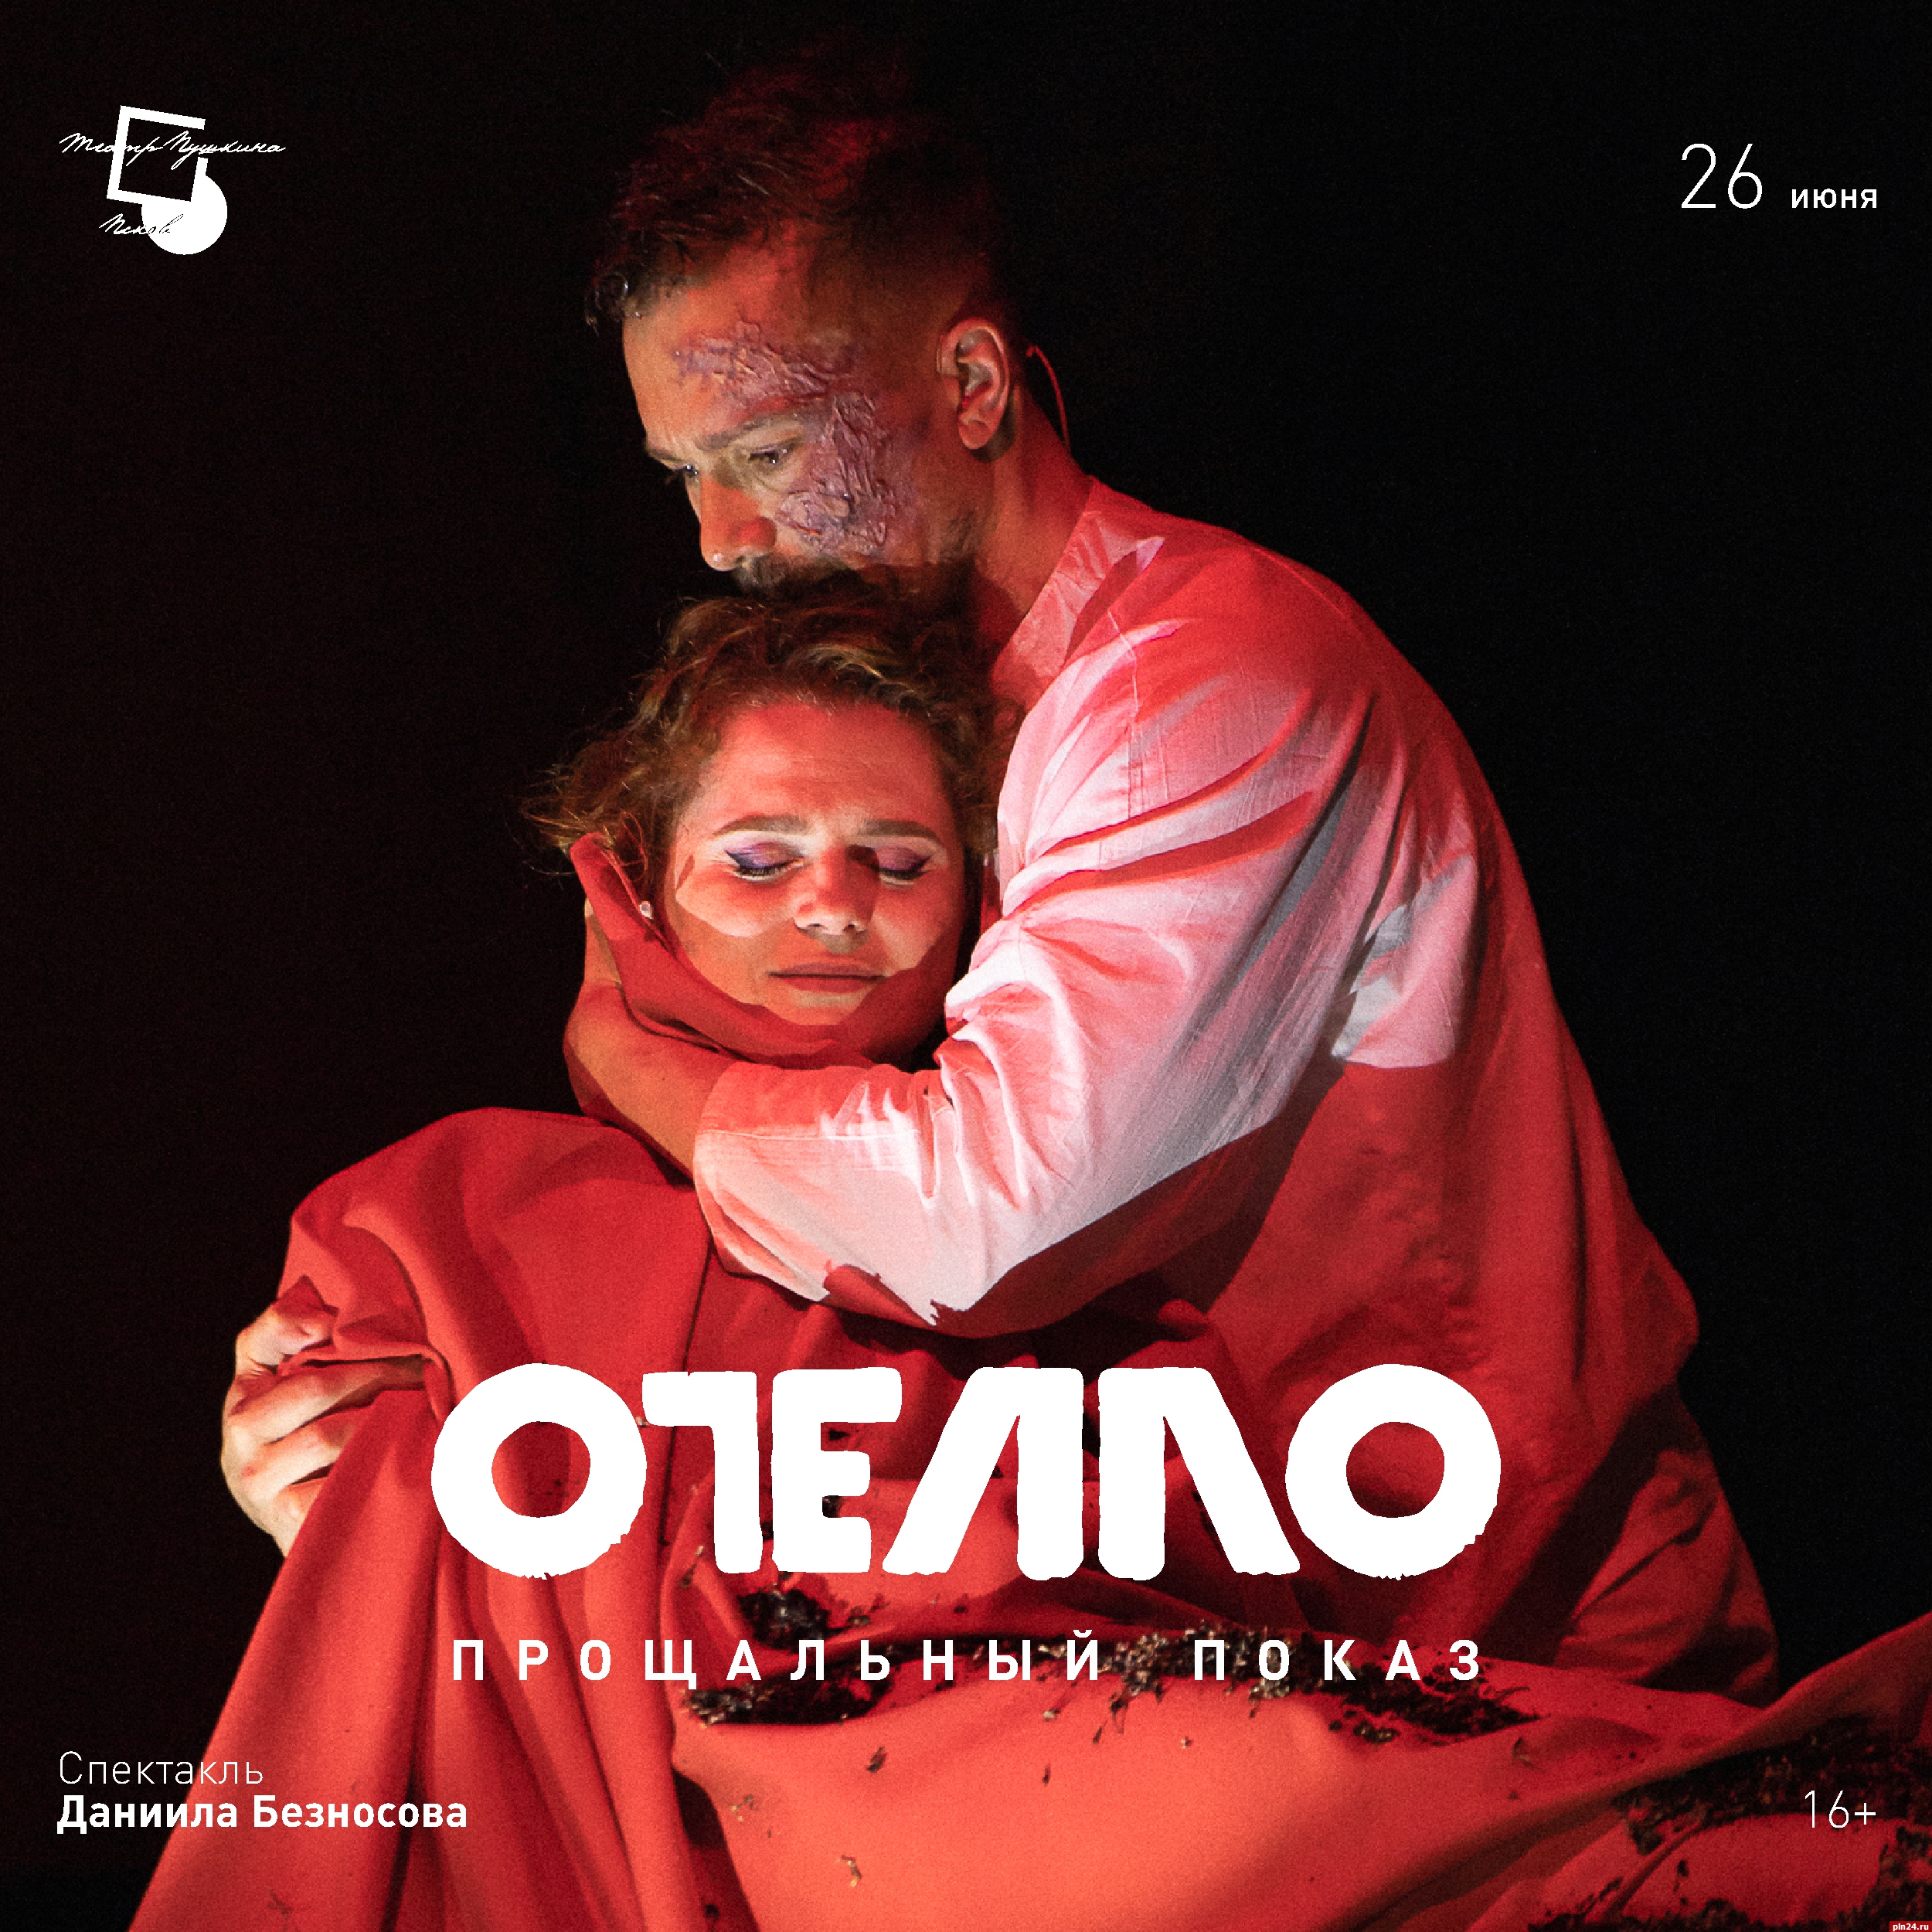 Прощальный показ спектакля «Отелло» в Псковском театре драмы состоится 26 июня